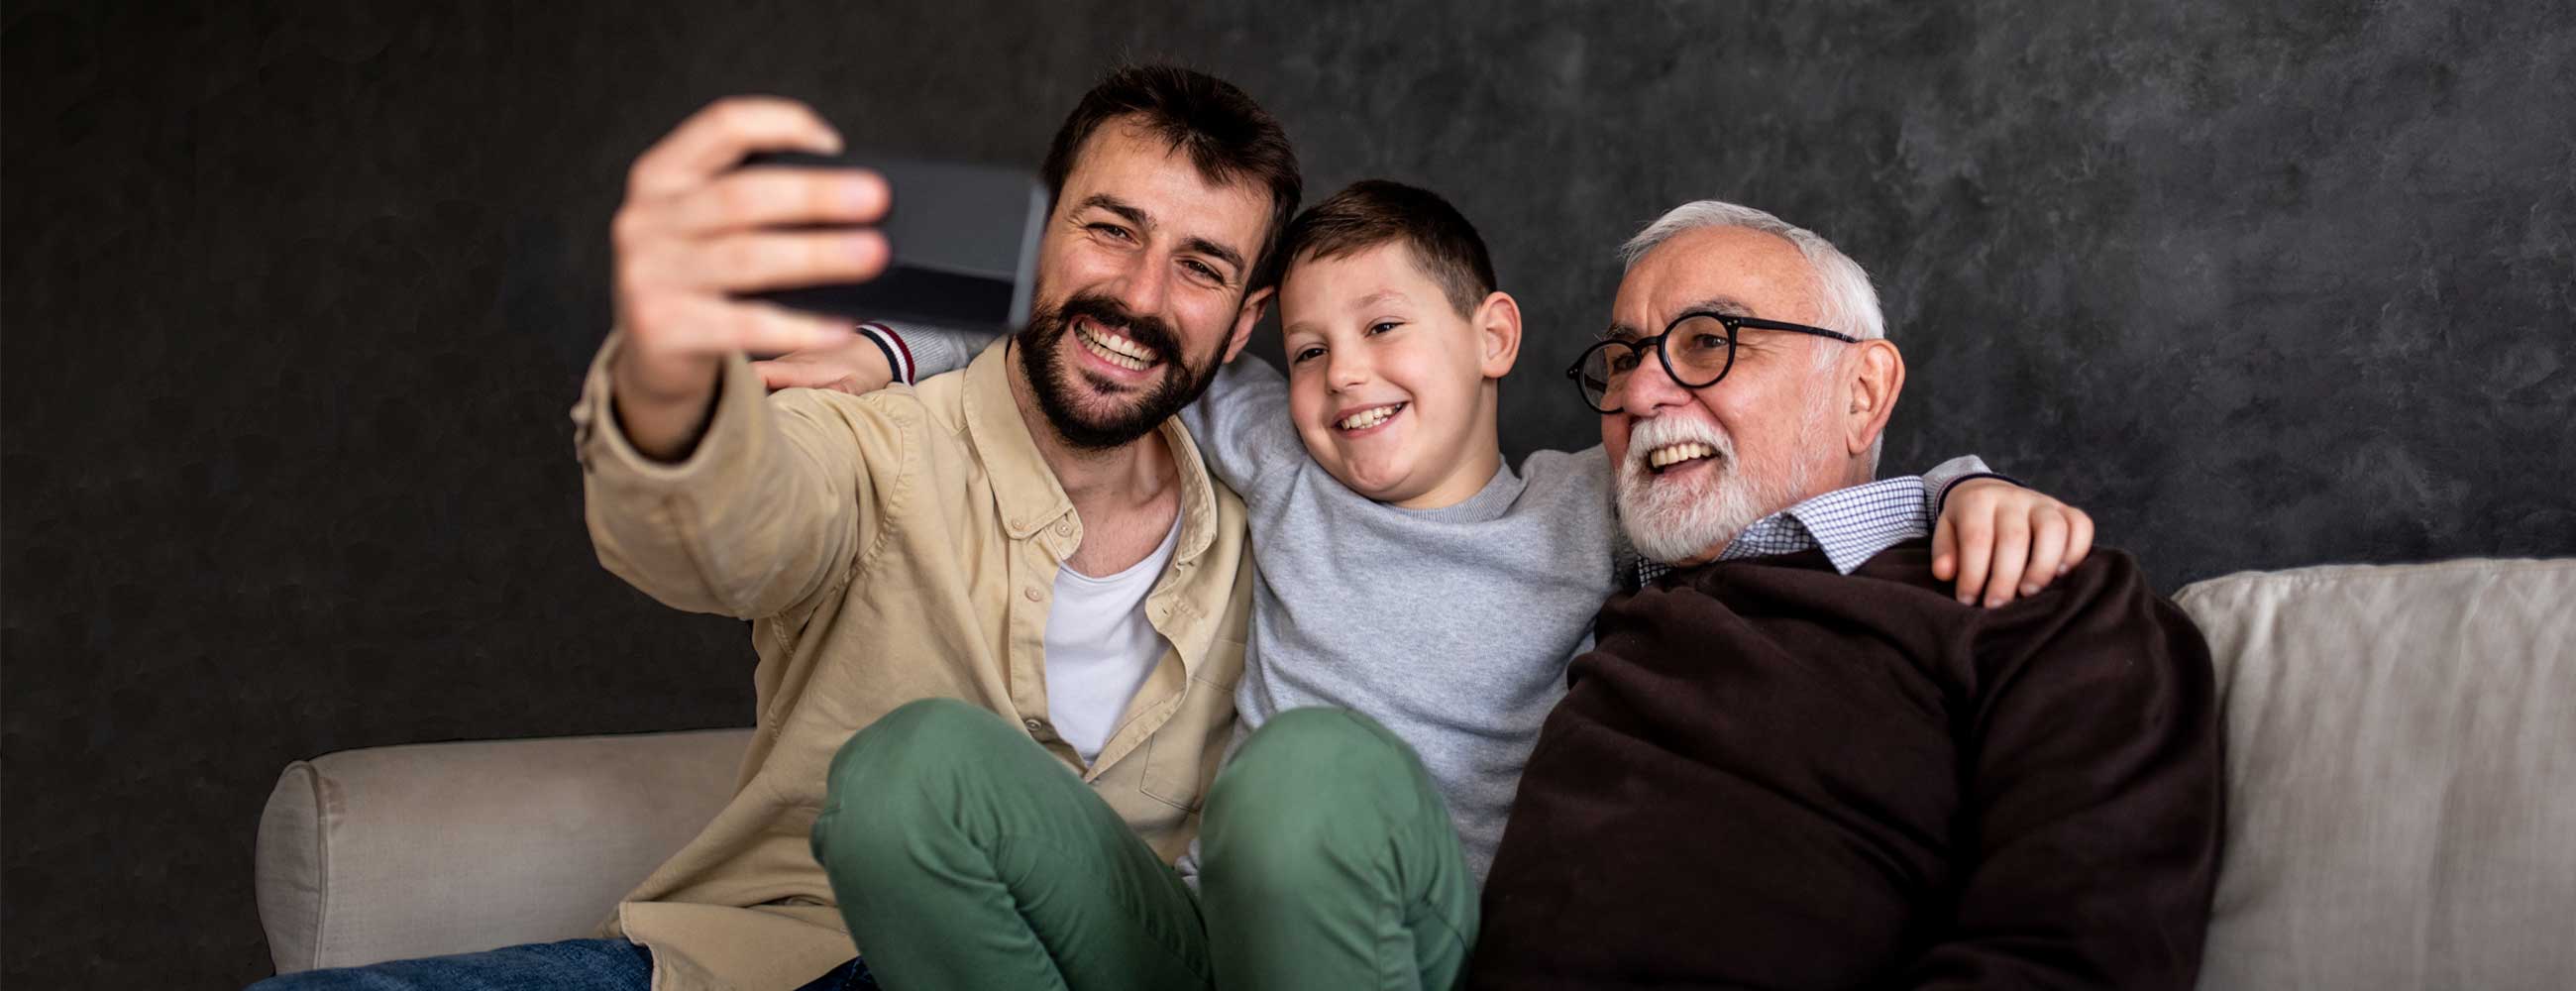 祖父，父亲和儿子一起自拍照时微笑着。